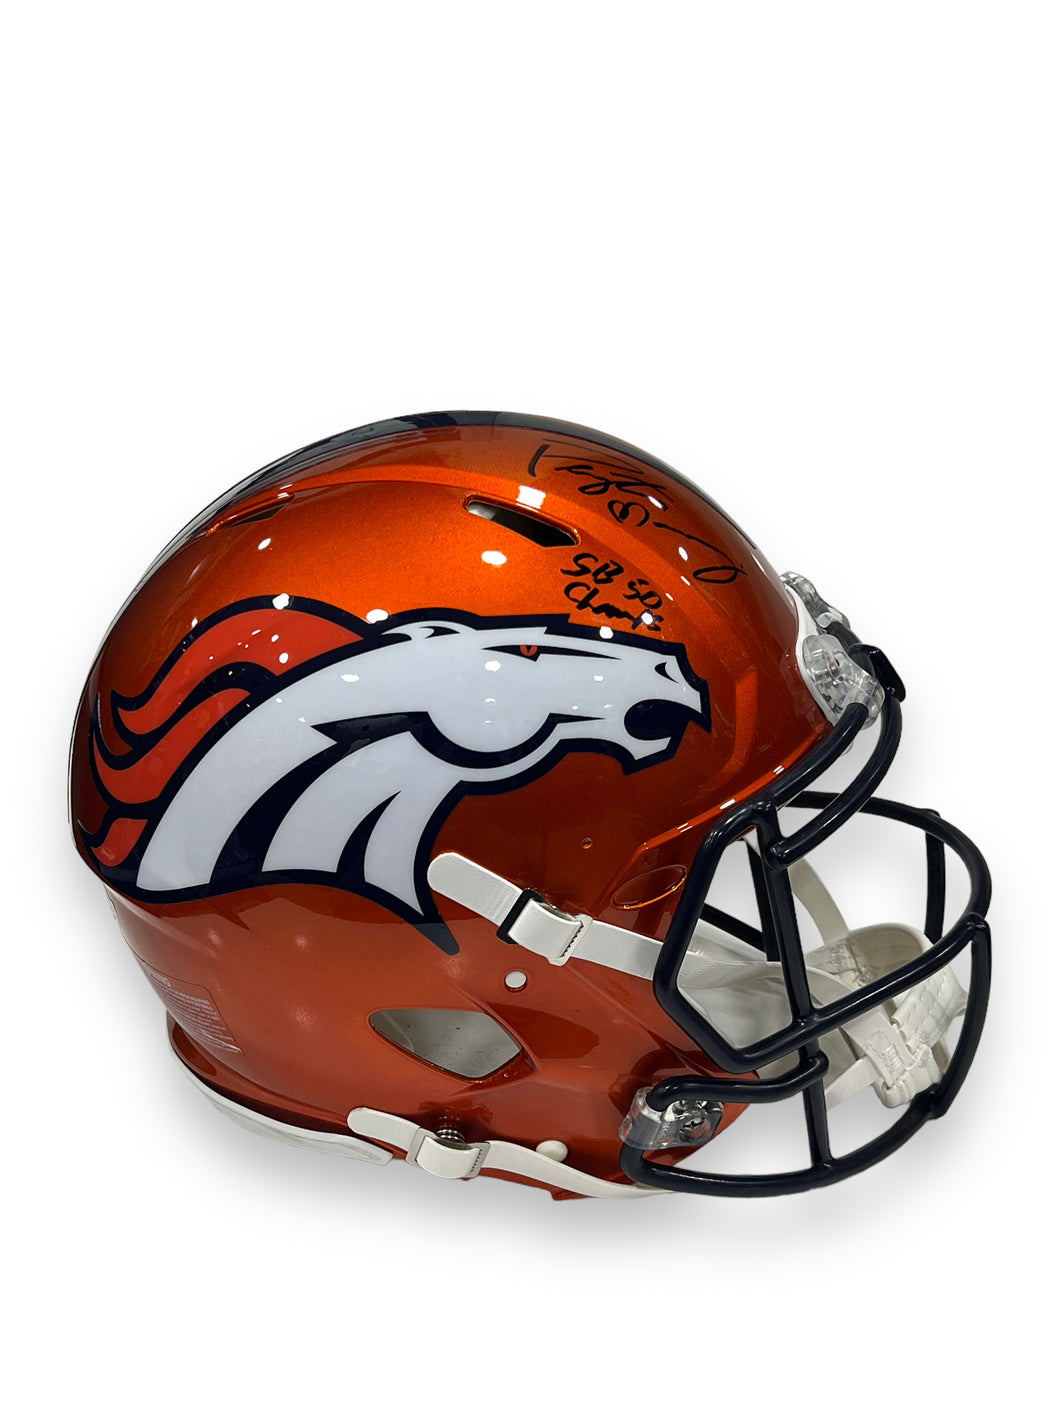 Casco Speed Pro Flash / Broncos / Peyton Manning